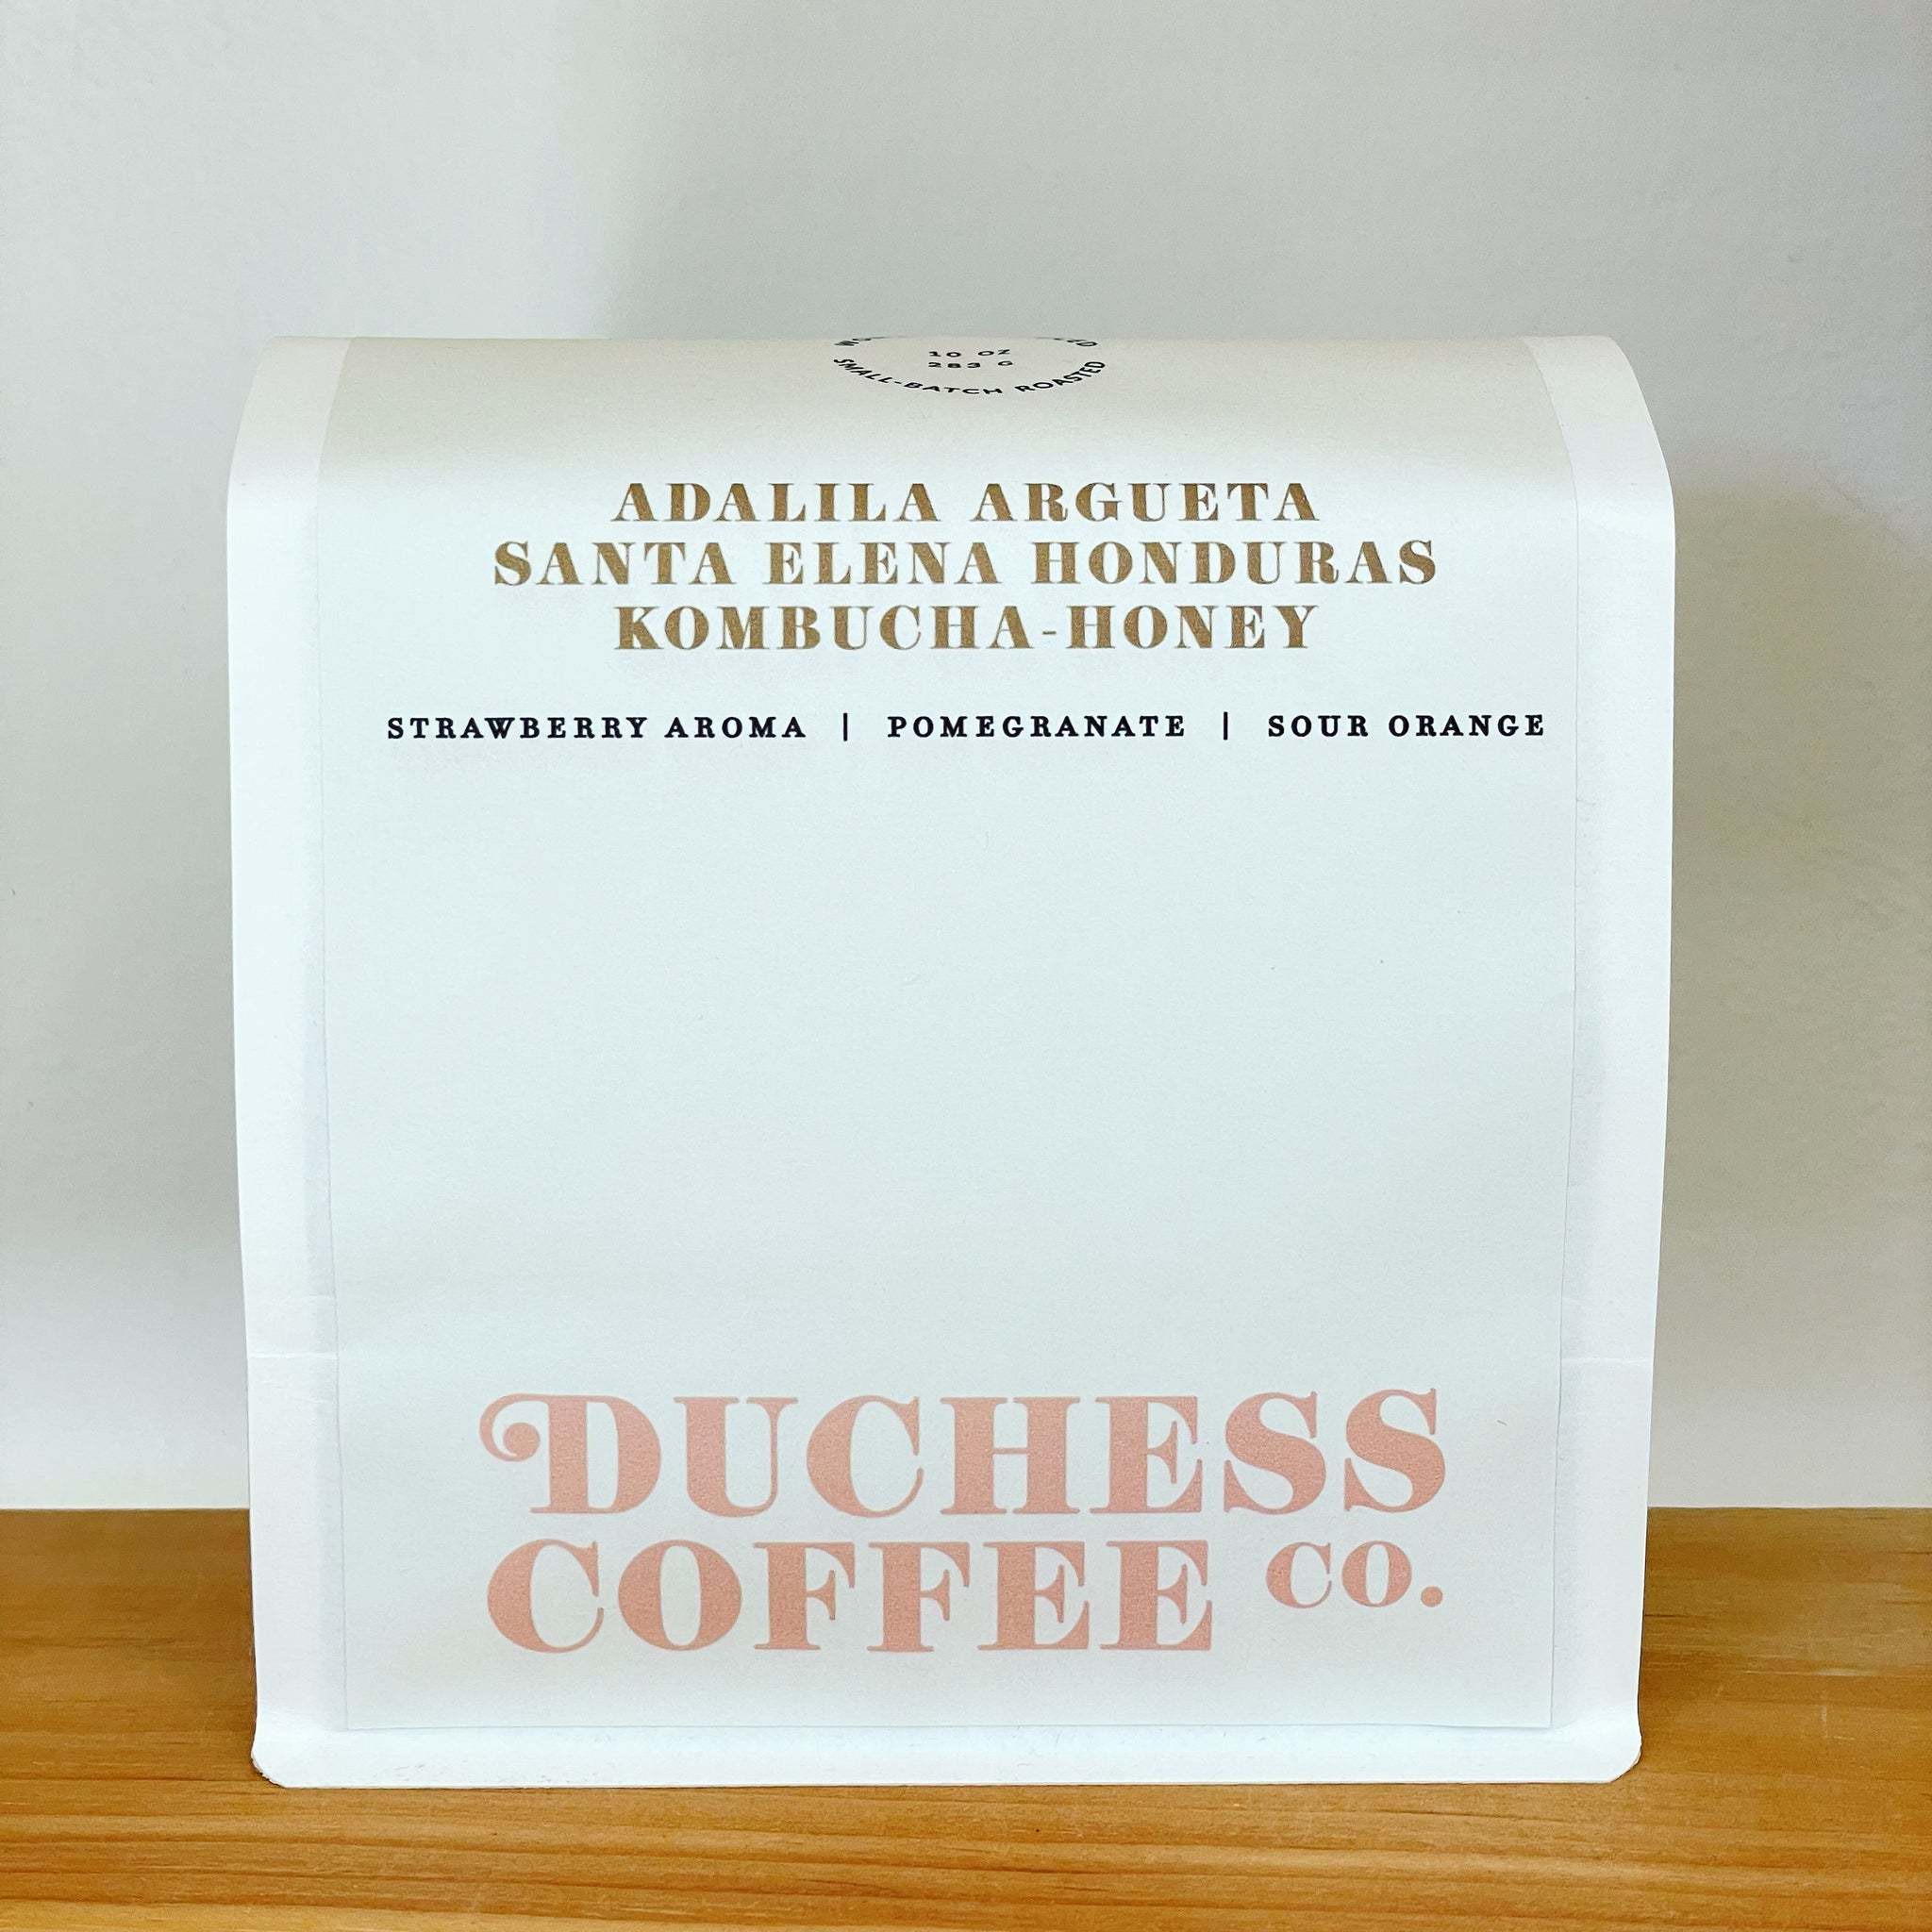 Adalila Argueta Santa Elena Honduras Kombucha-Honey